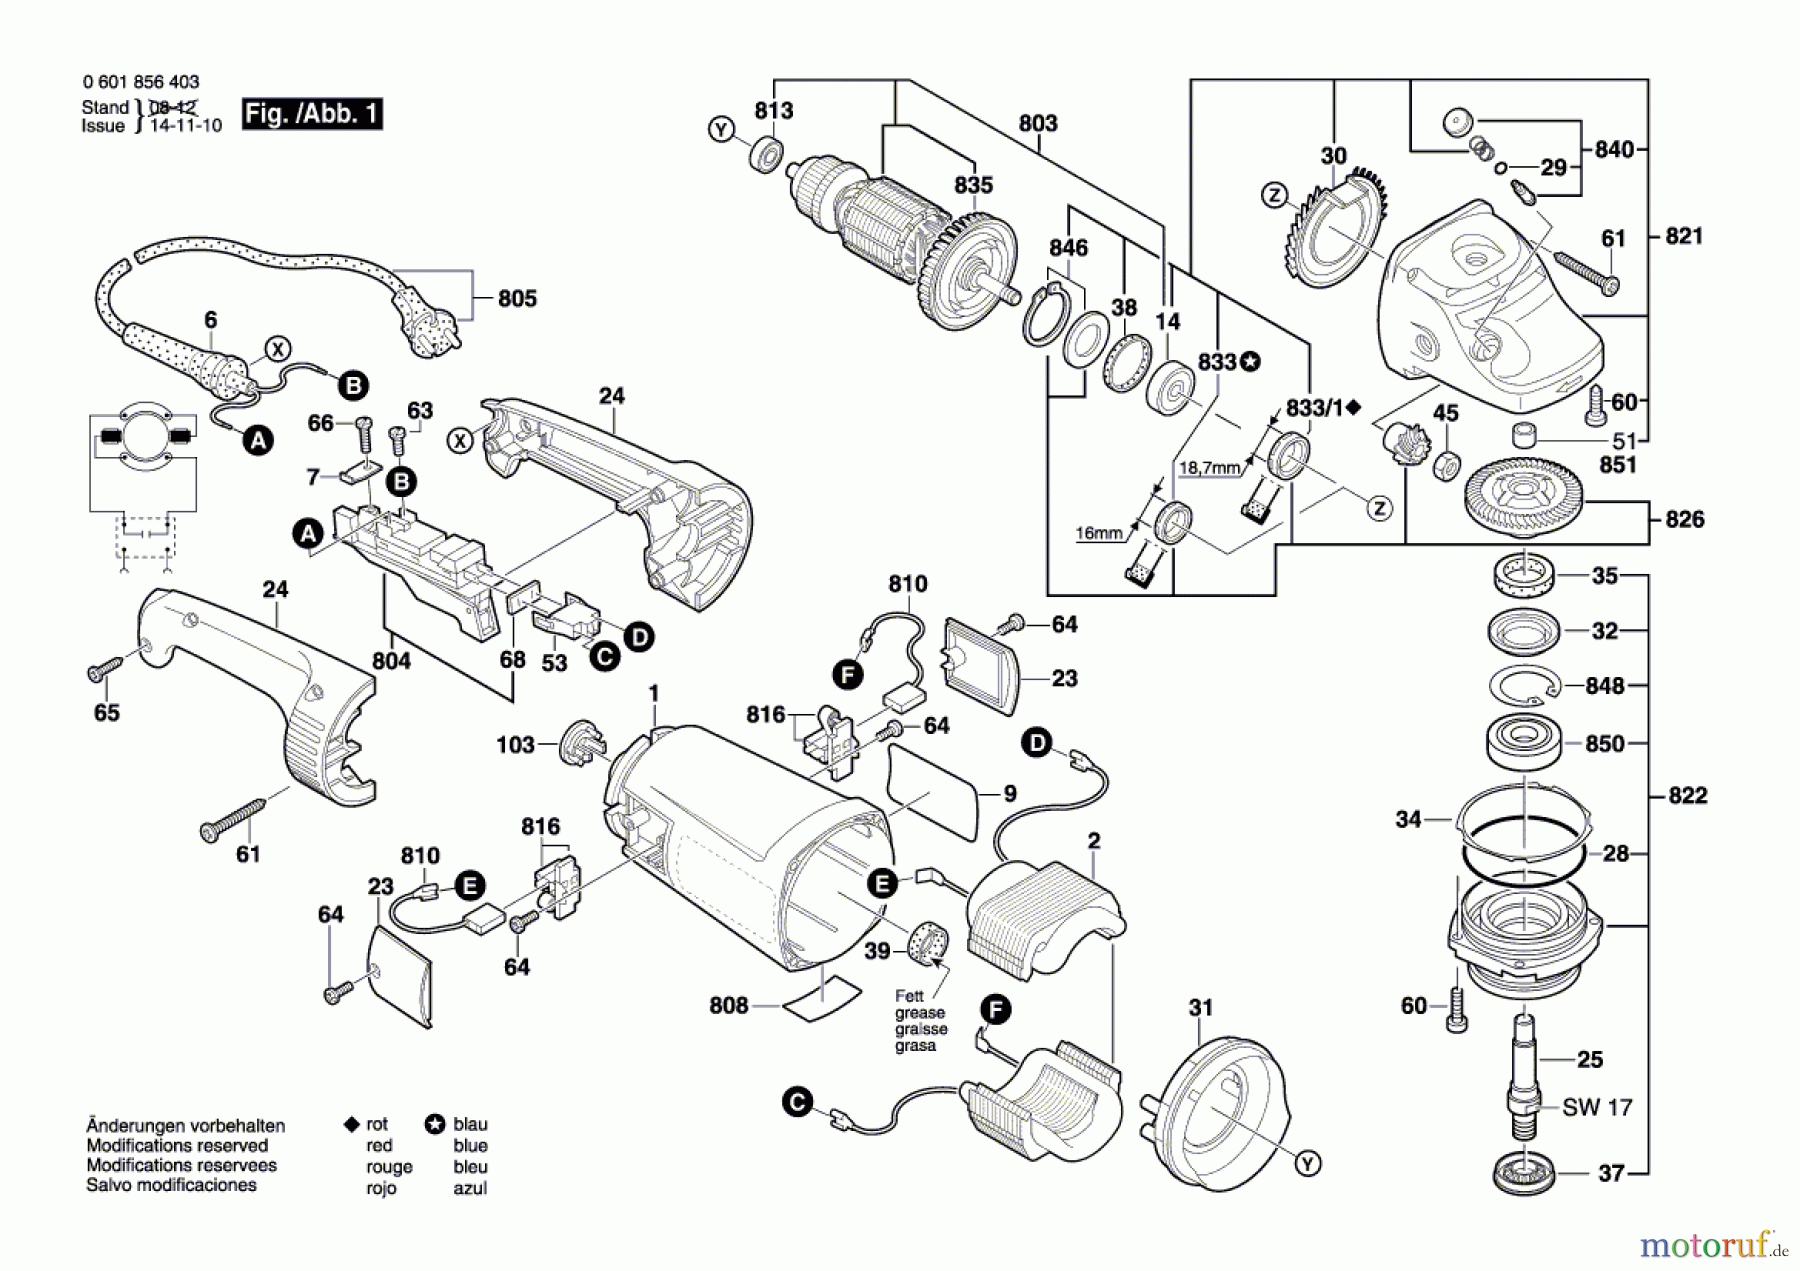  Bosch Werkzeug Winkelschleifer GWS 26-230 H Seite 1